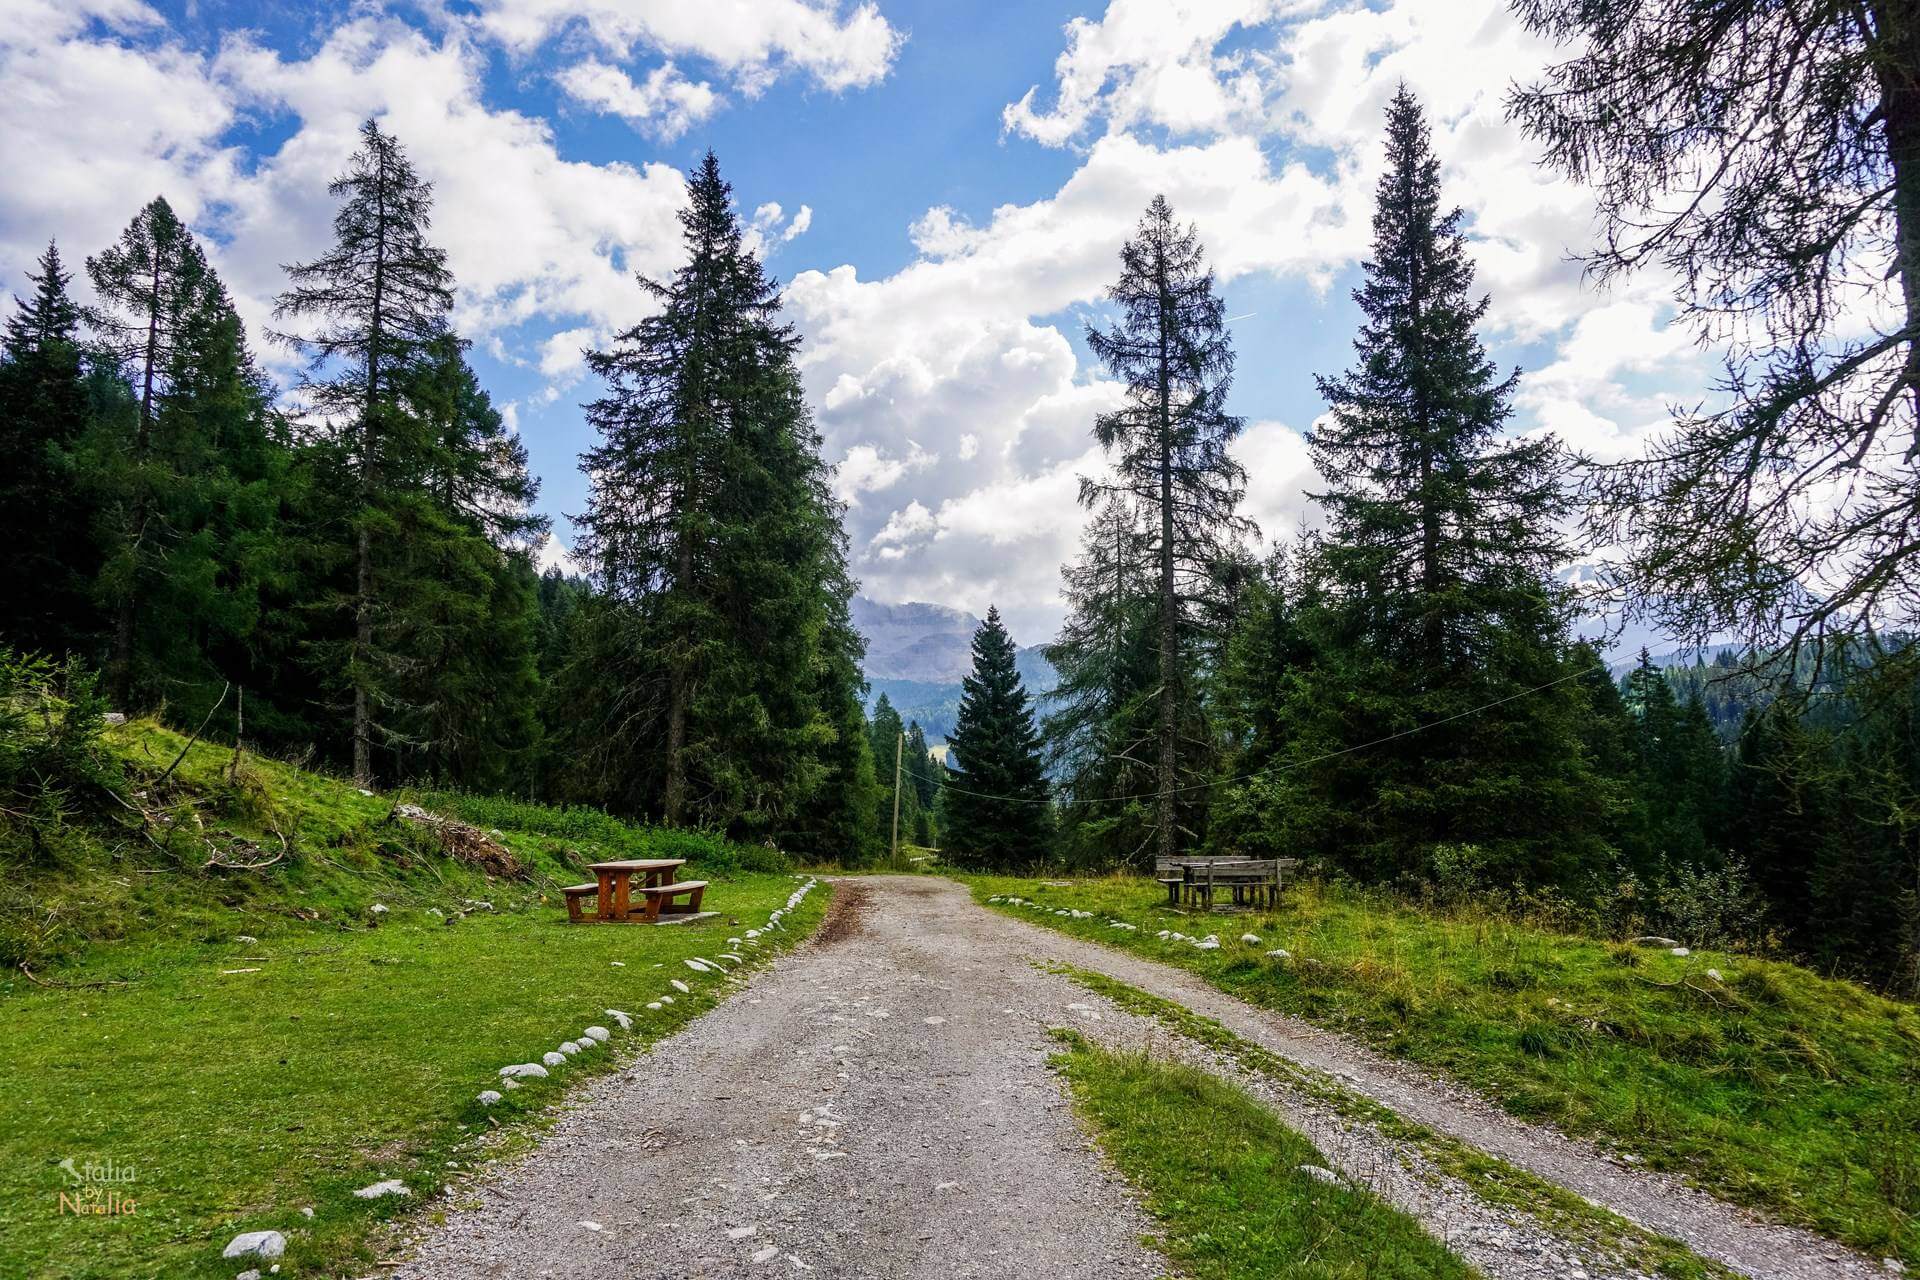 Jezioro Nambino łatwy szlak Park Adamello Brenta Madonna di Campiglio włoskie Alpy Retyckie nambino lake easy trail